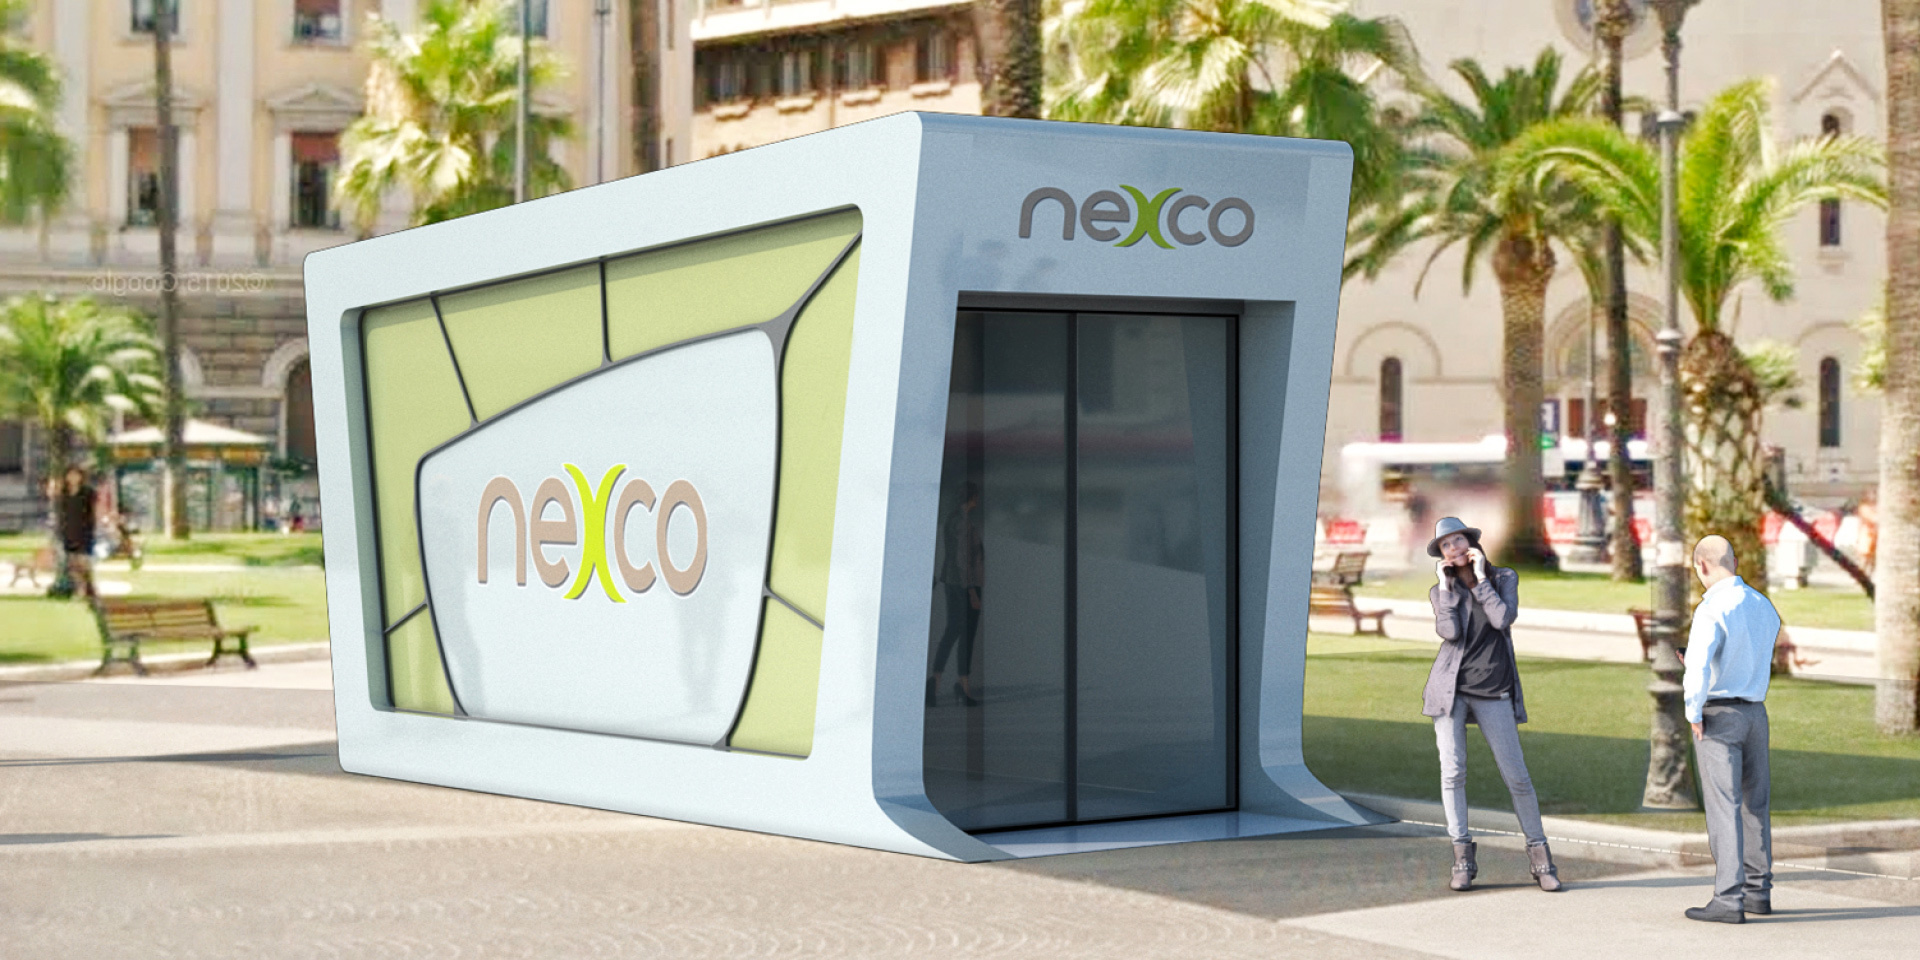 Il futuro del retail Da anni Nexco è attiva su tutto il territorio nazionale nel settore retail, ponendosi come general contractor per la gestione integrata degli immobili orientata alla valorizzazione degli spazi adibiti alla vendita e all’erogazione di servizi.